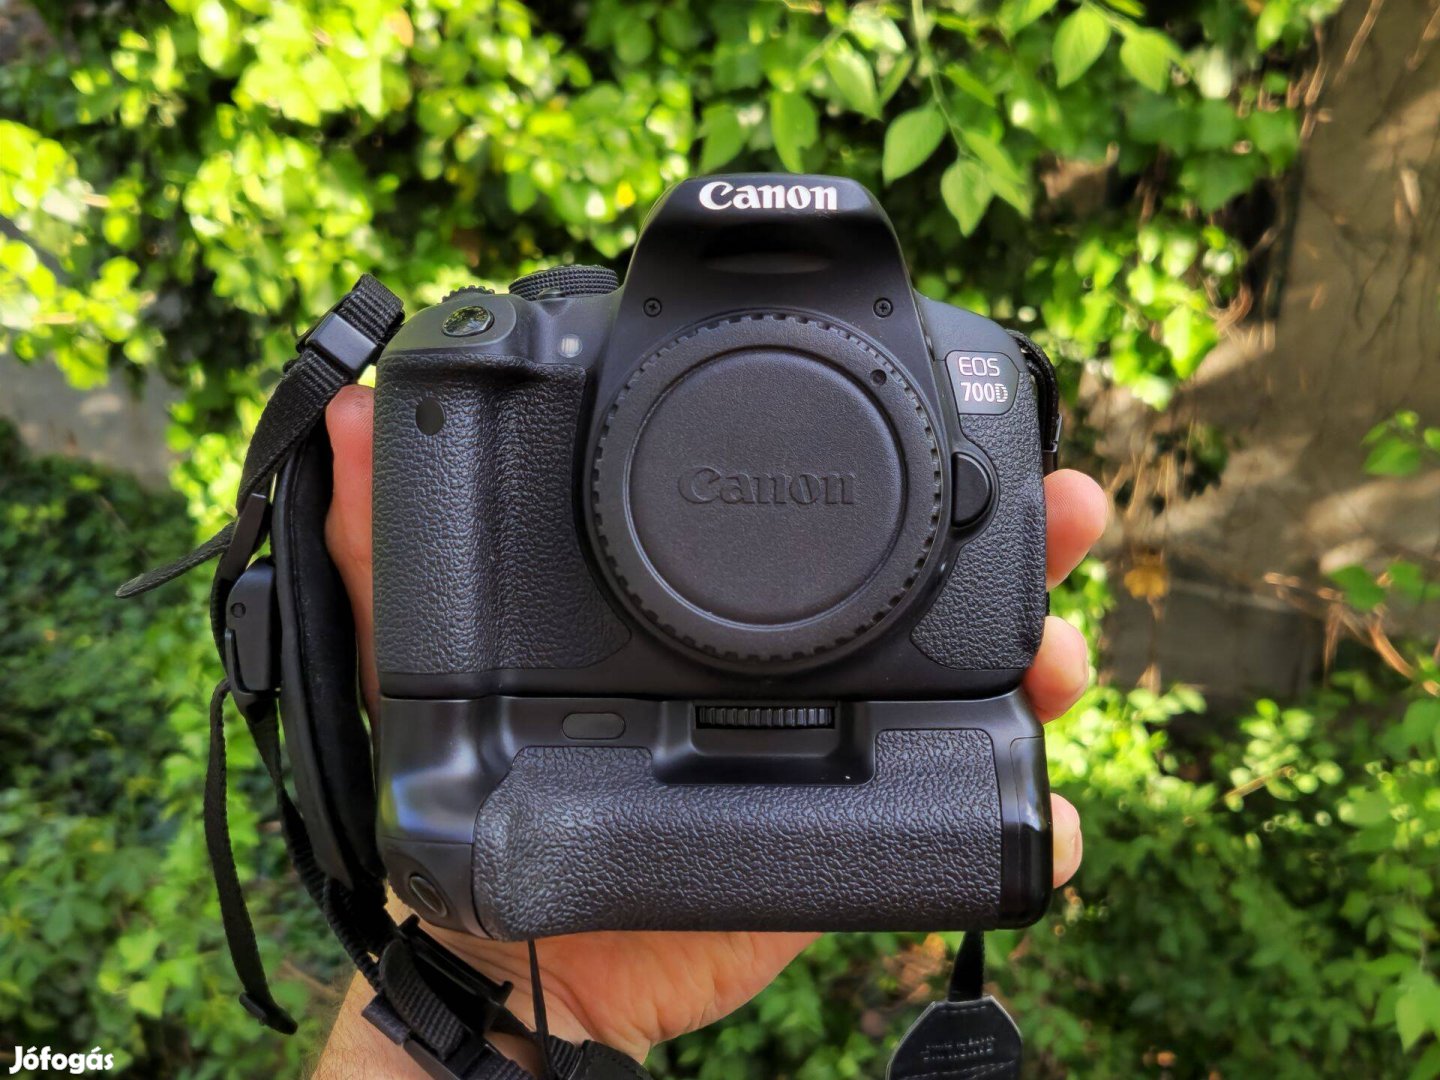 Canon EOS 700D + eredeti doboz + Cullmann táska